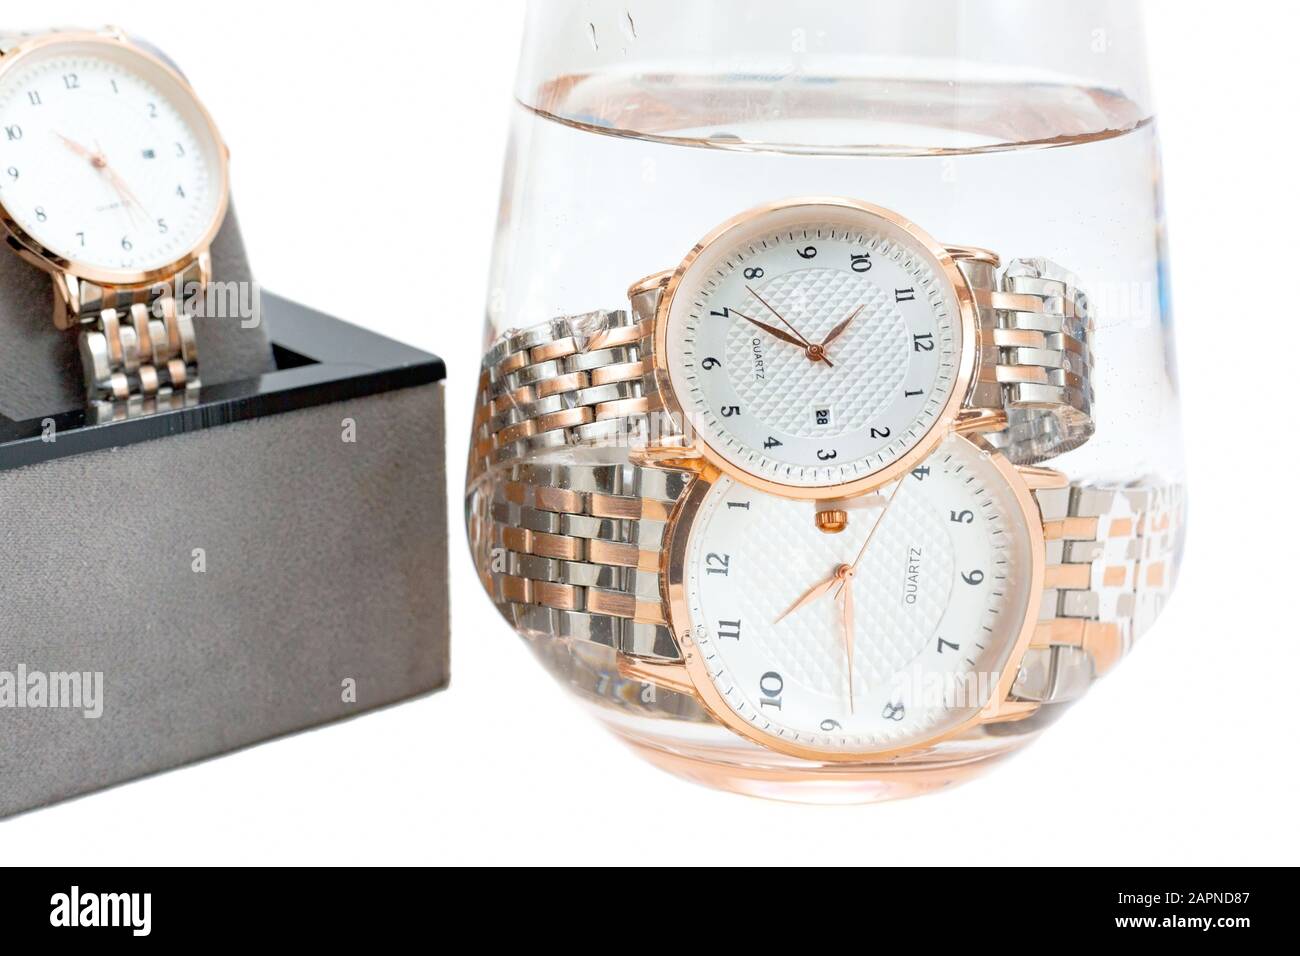 Klassische goldfarbene wasserdichte klassische Armbanduhren aus Metall tauchten in ein Glas Wasser und wurden in einem offenen Geschenkkasten präsentiert. Isoliert auf weißem Backgrot Stockfoto